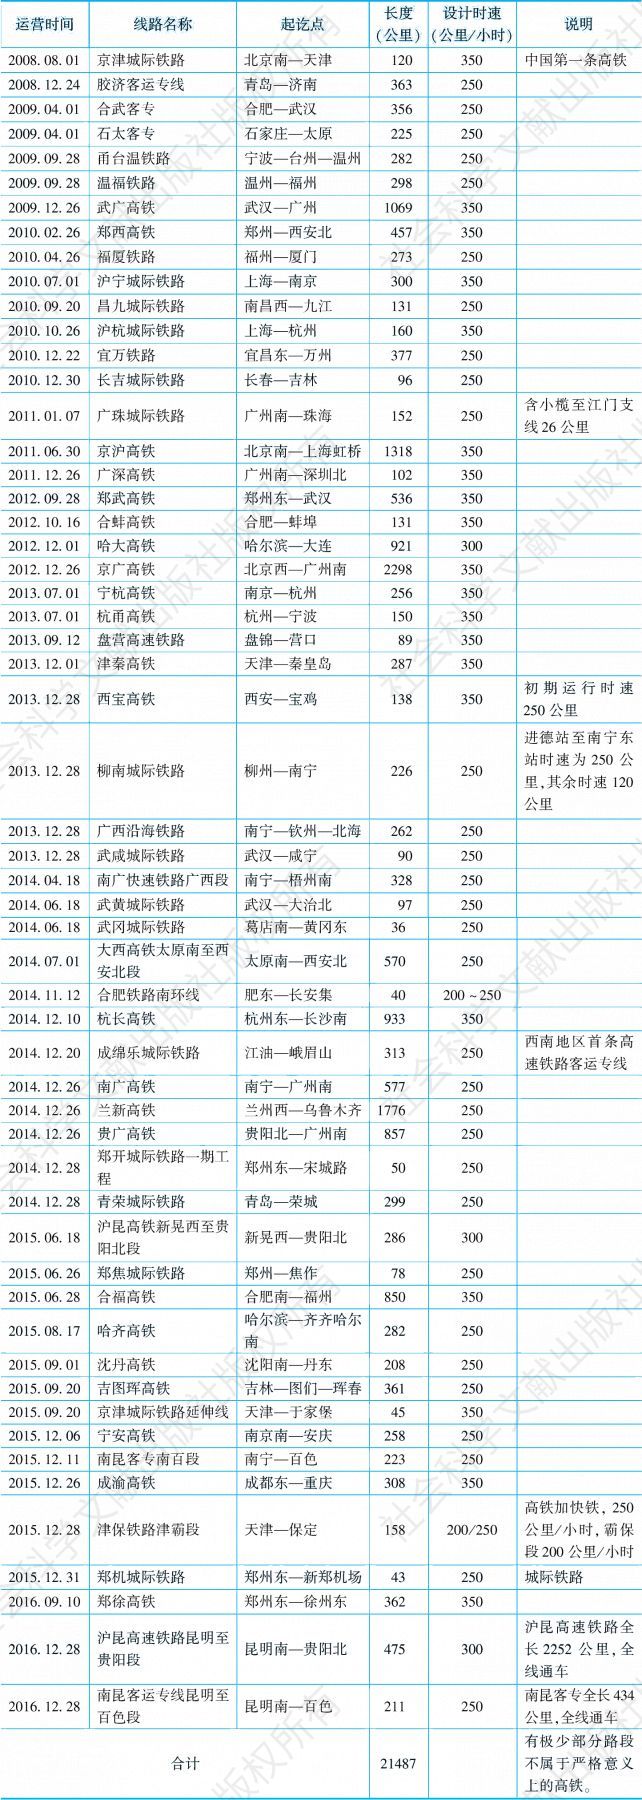 表2-15 中国高速铁路运营线路统计